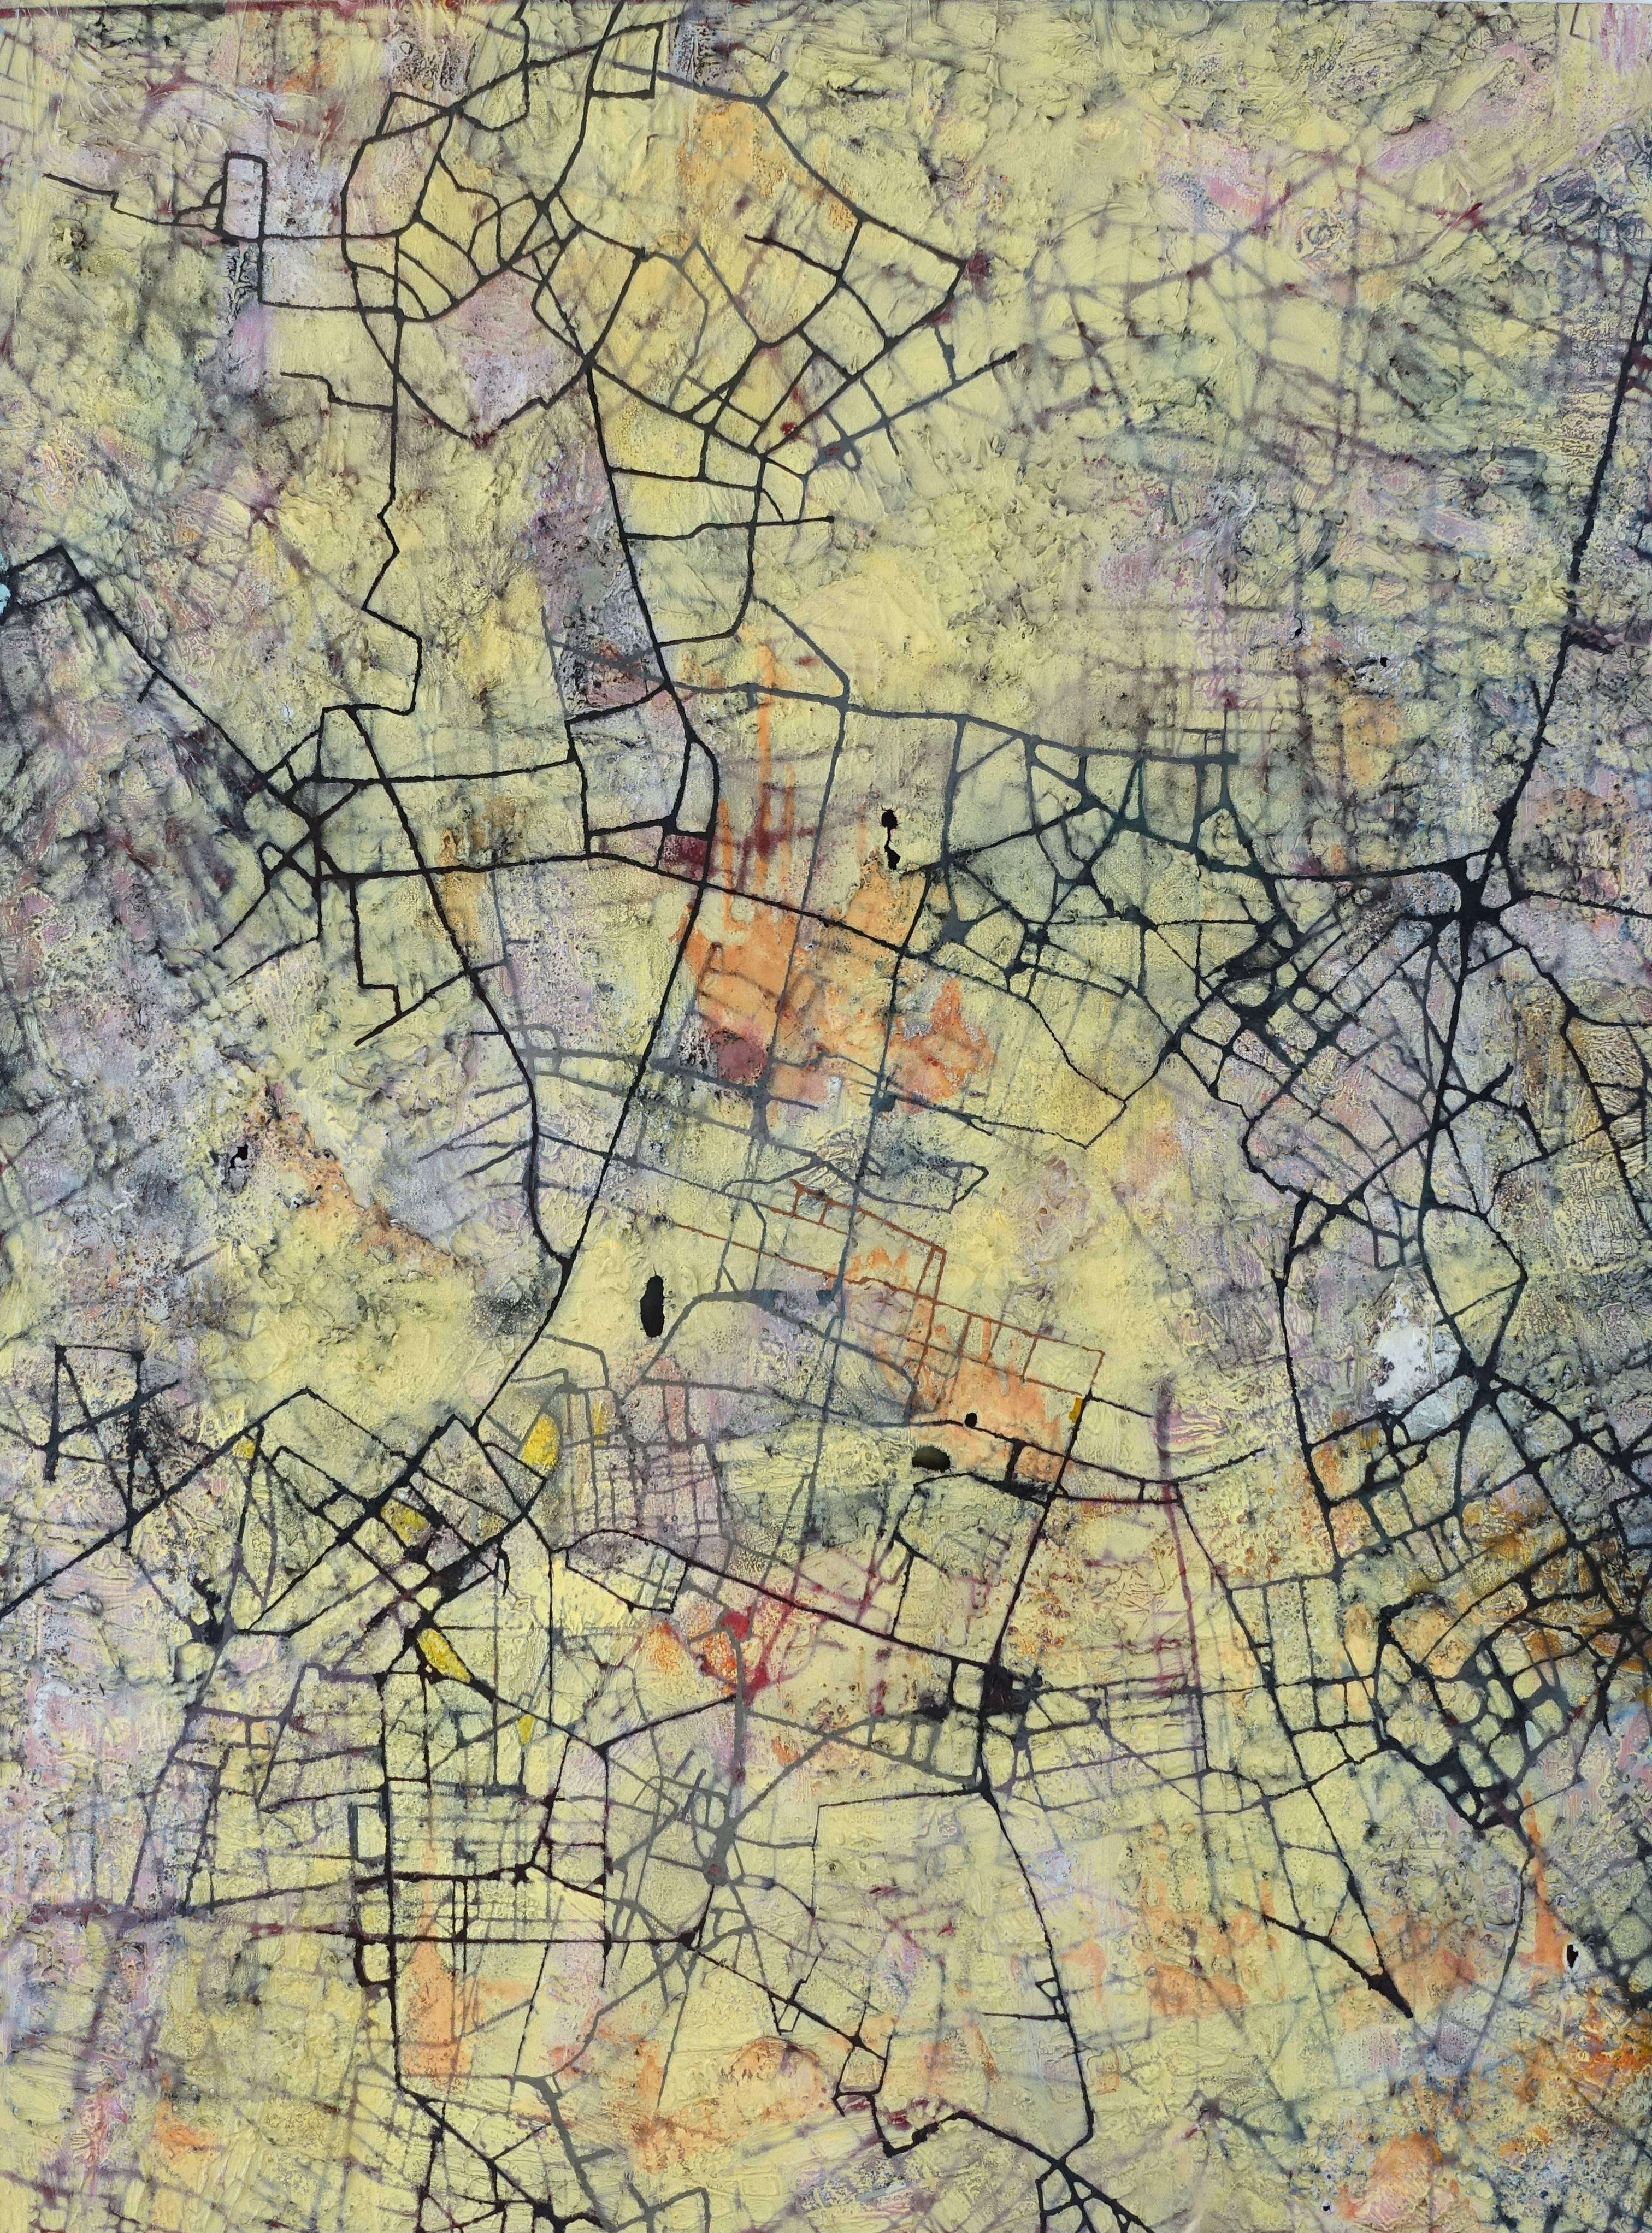 Stanza Abstract Painting – City of Desires – britisches abstraktes Ölgemälde einer Stadt mit gelbem Grundriss